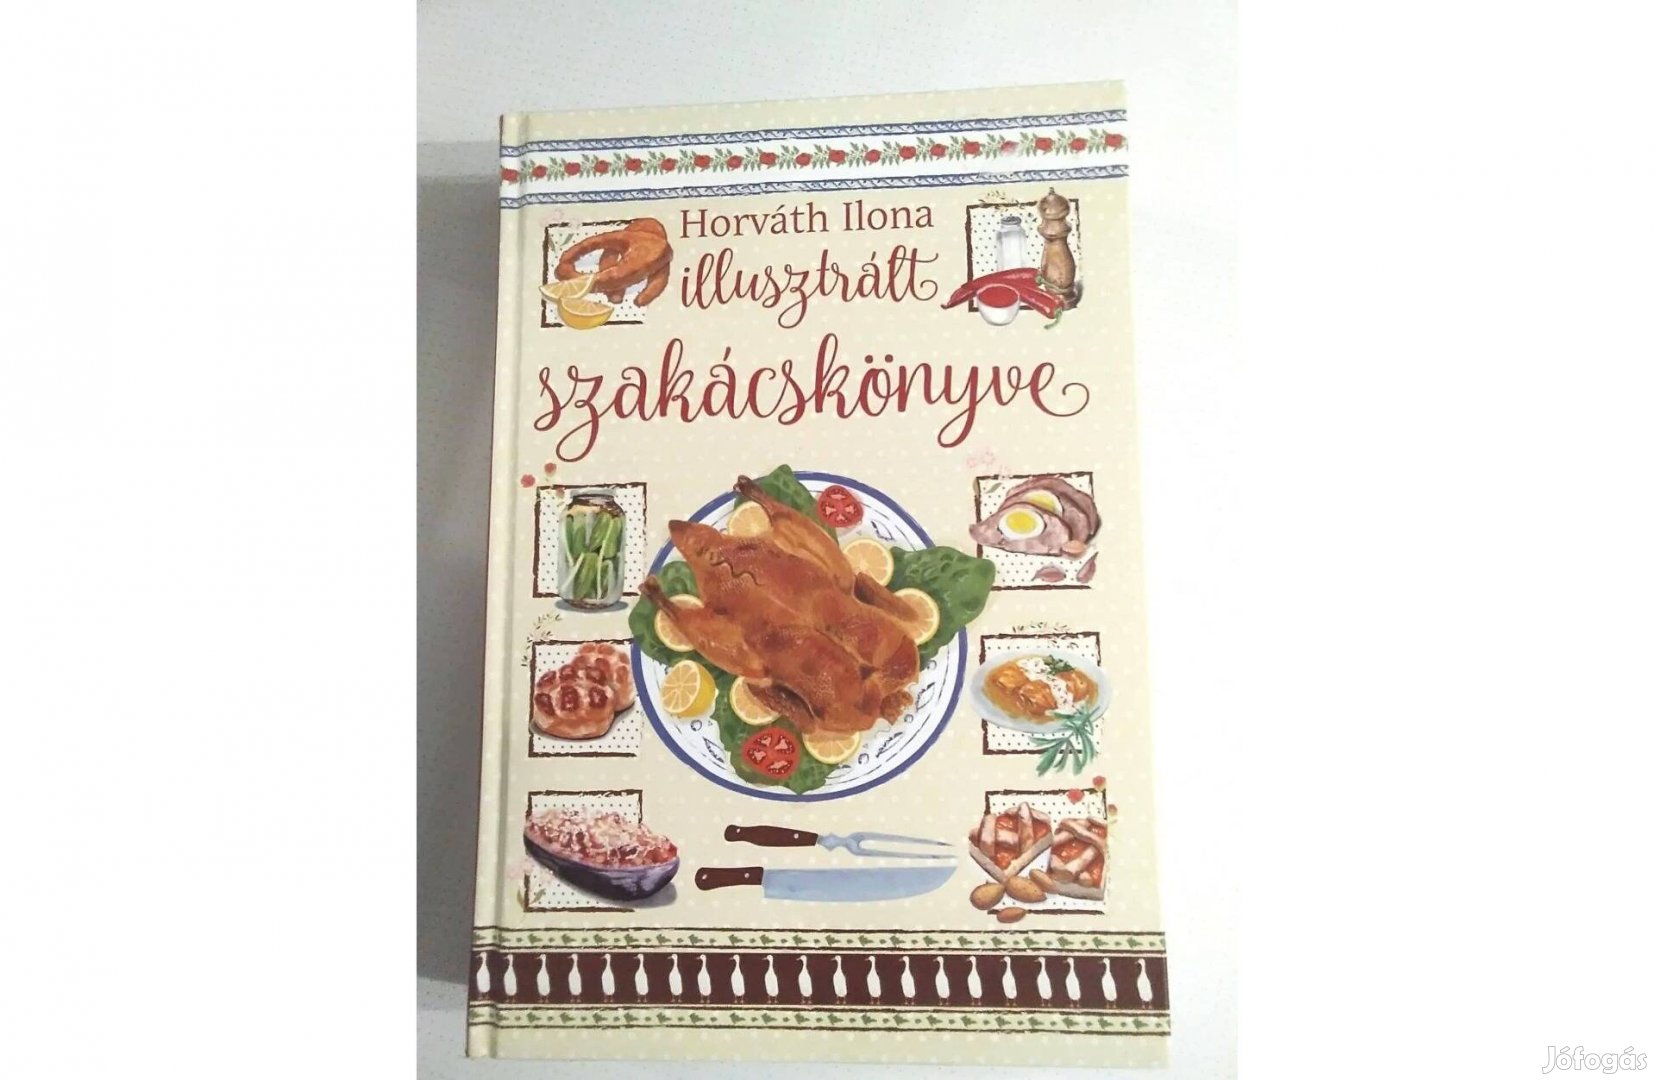 Horváth Ilona illusztrált szakácskönyve ajándékozható állapotban eladó